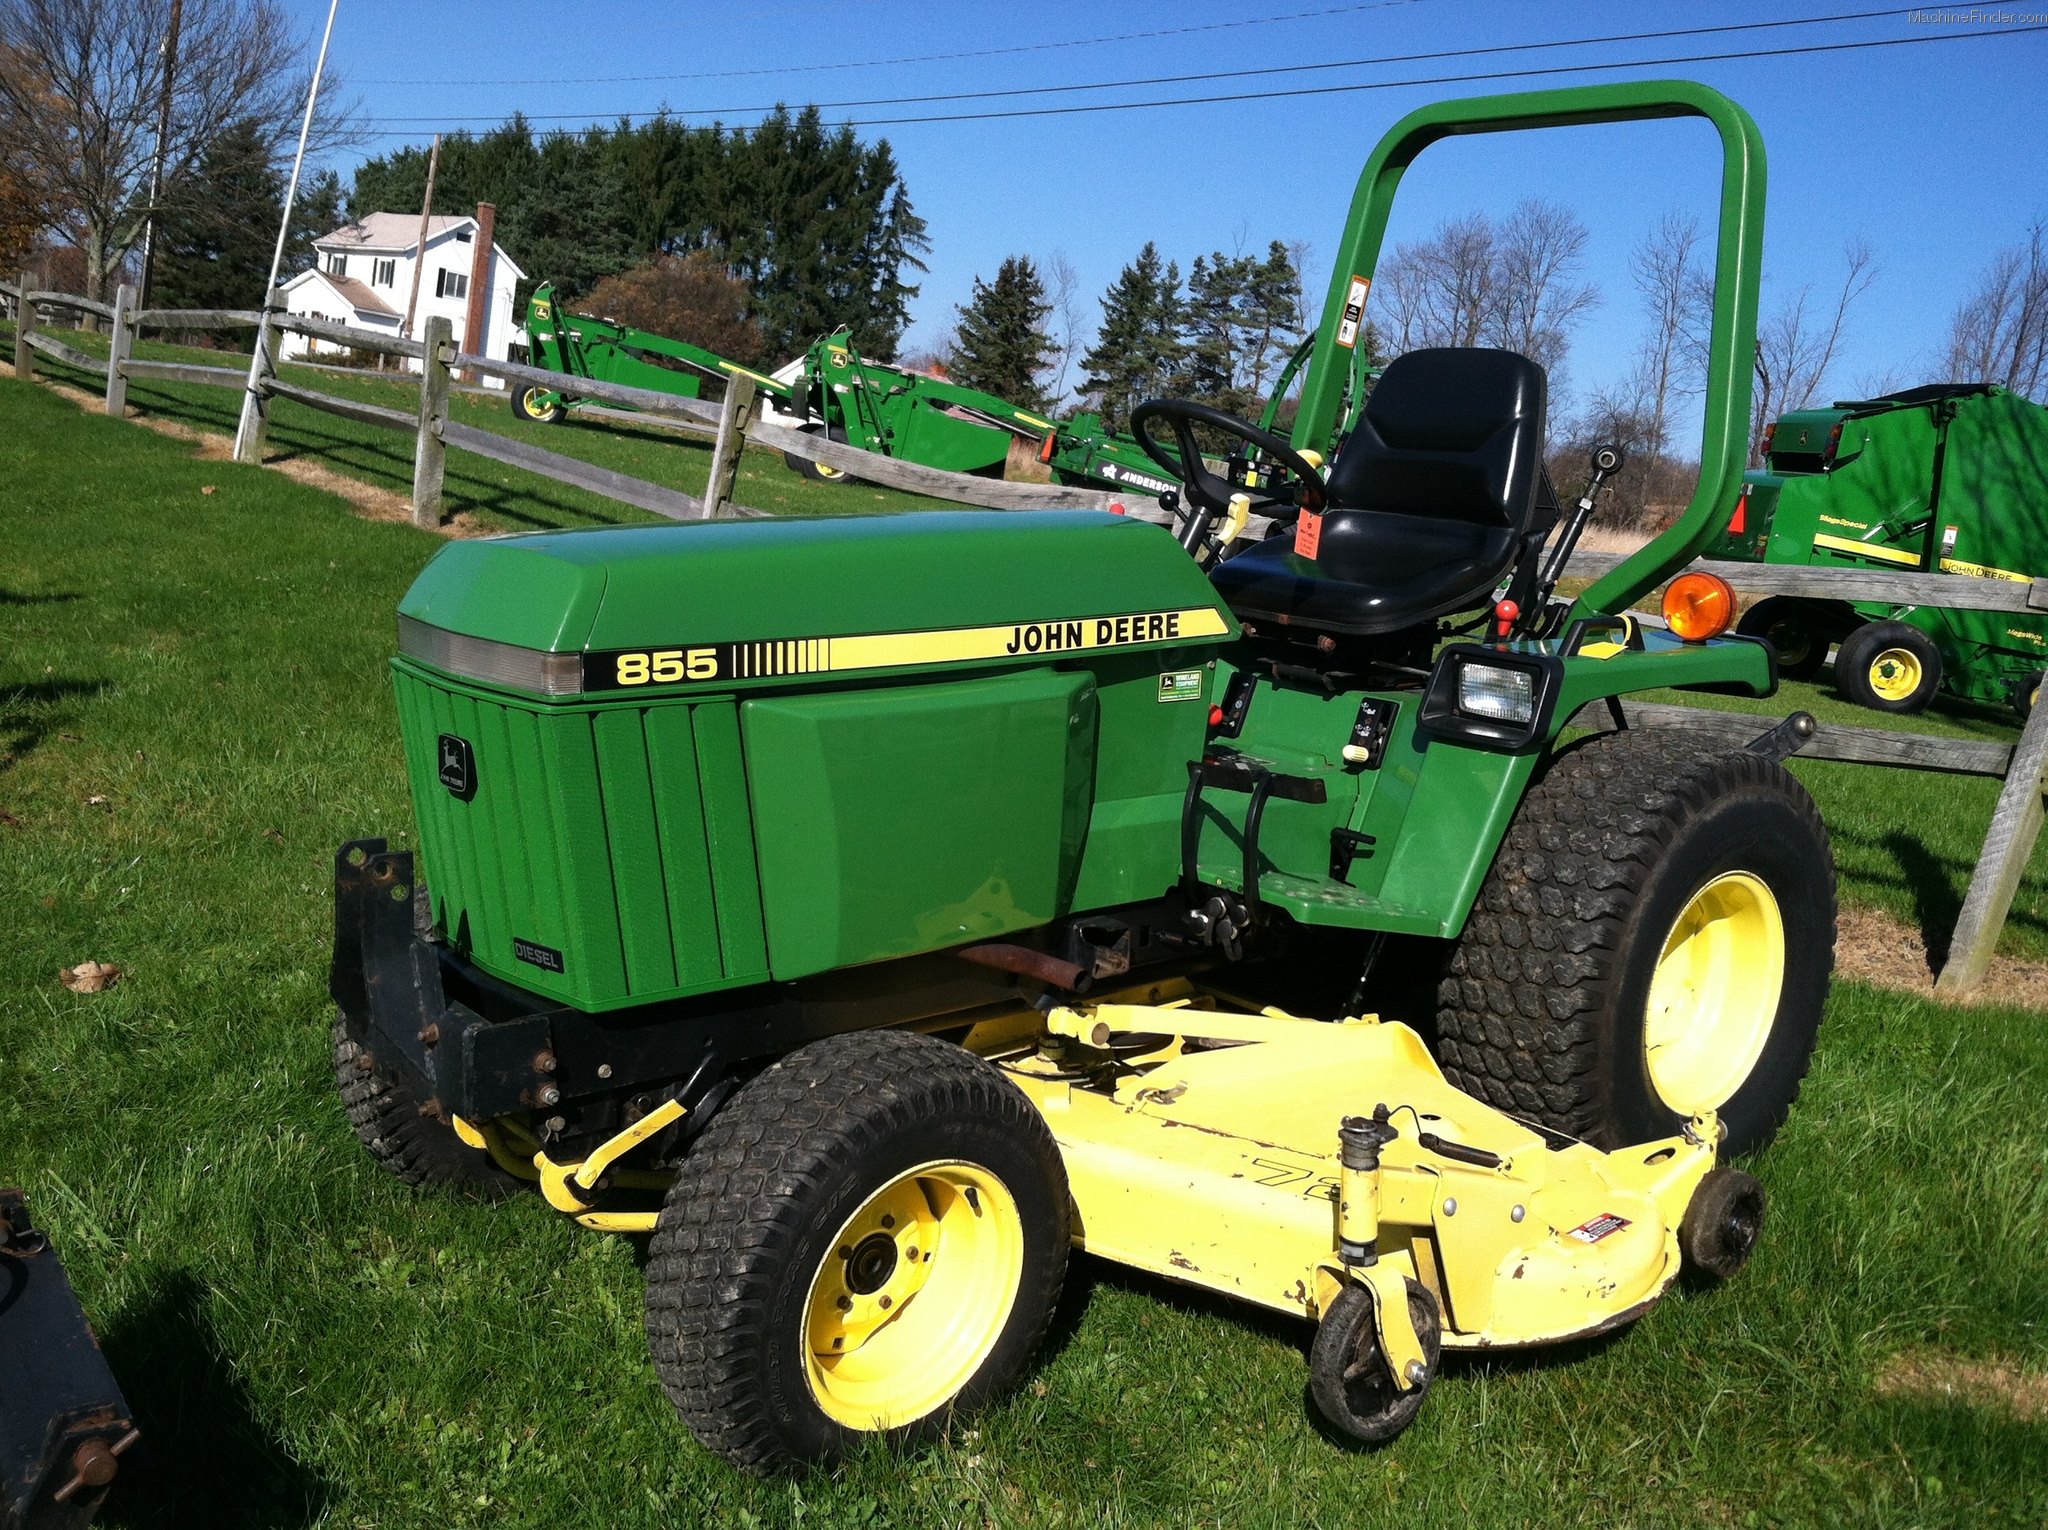 1997 John Deere 855 Tractors - Compact (1-40hp.) - John Deere ...